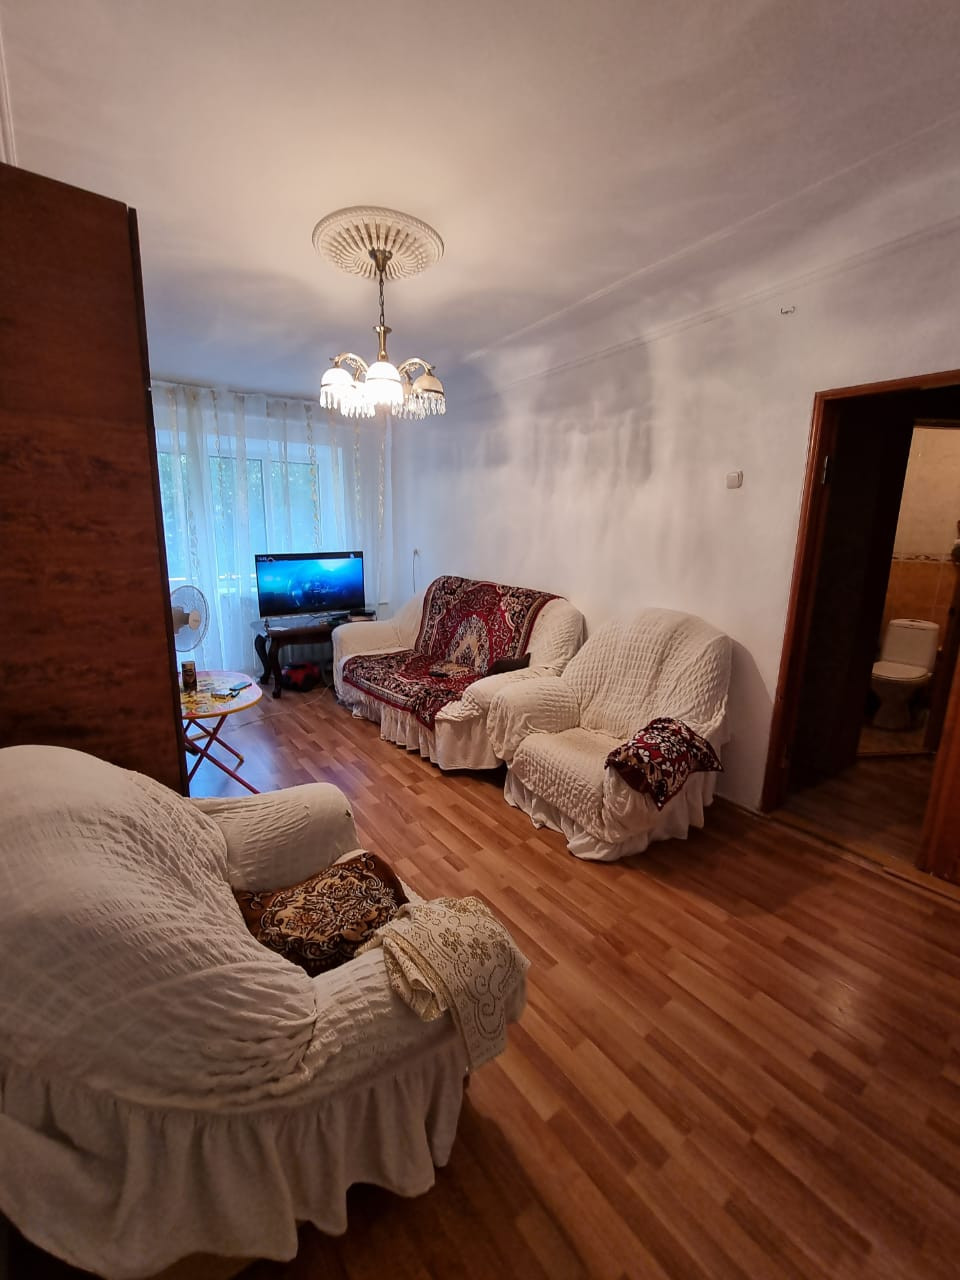 Снять квартиру в Карачаево. Свежие квартиры в черкесске